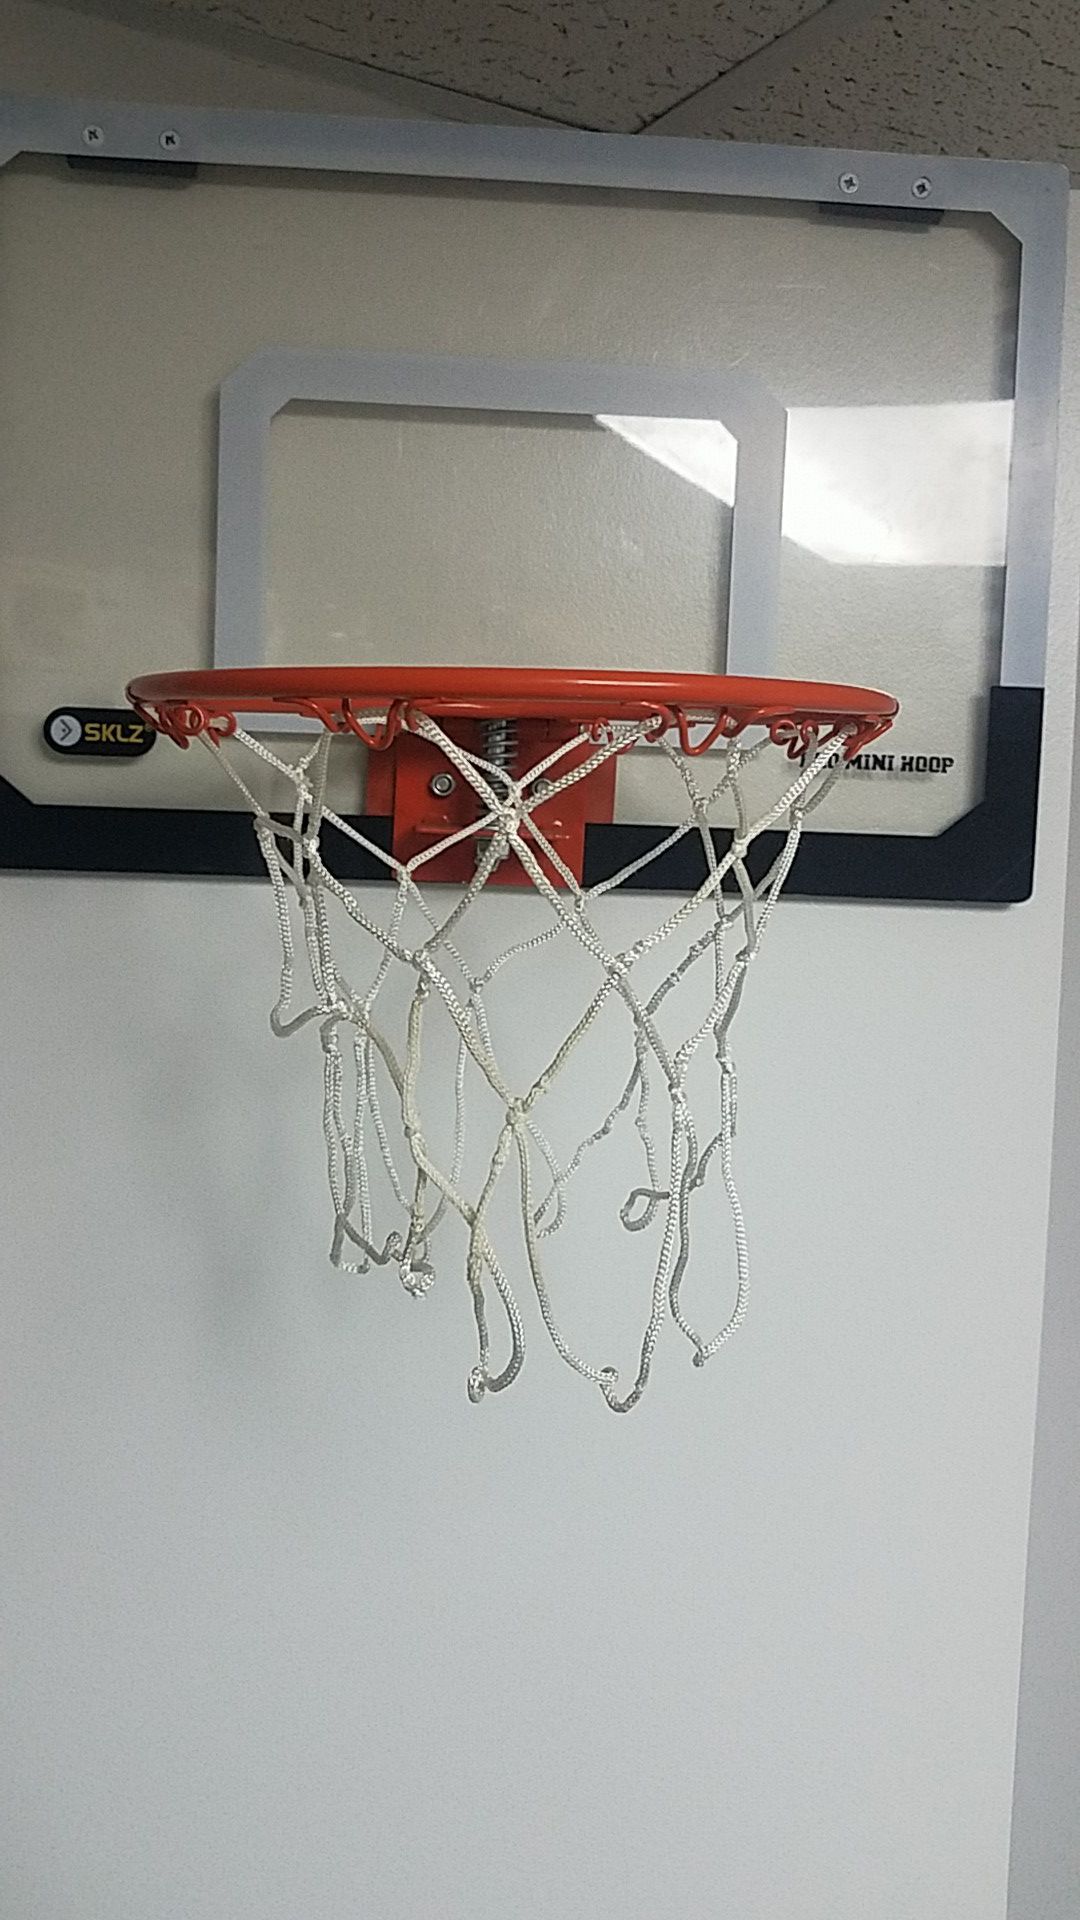 Sklz over door basketball hoop